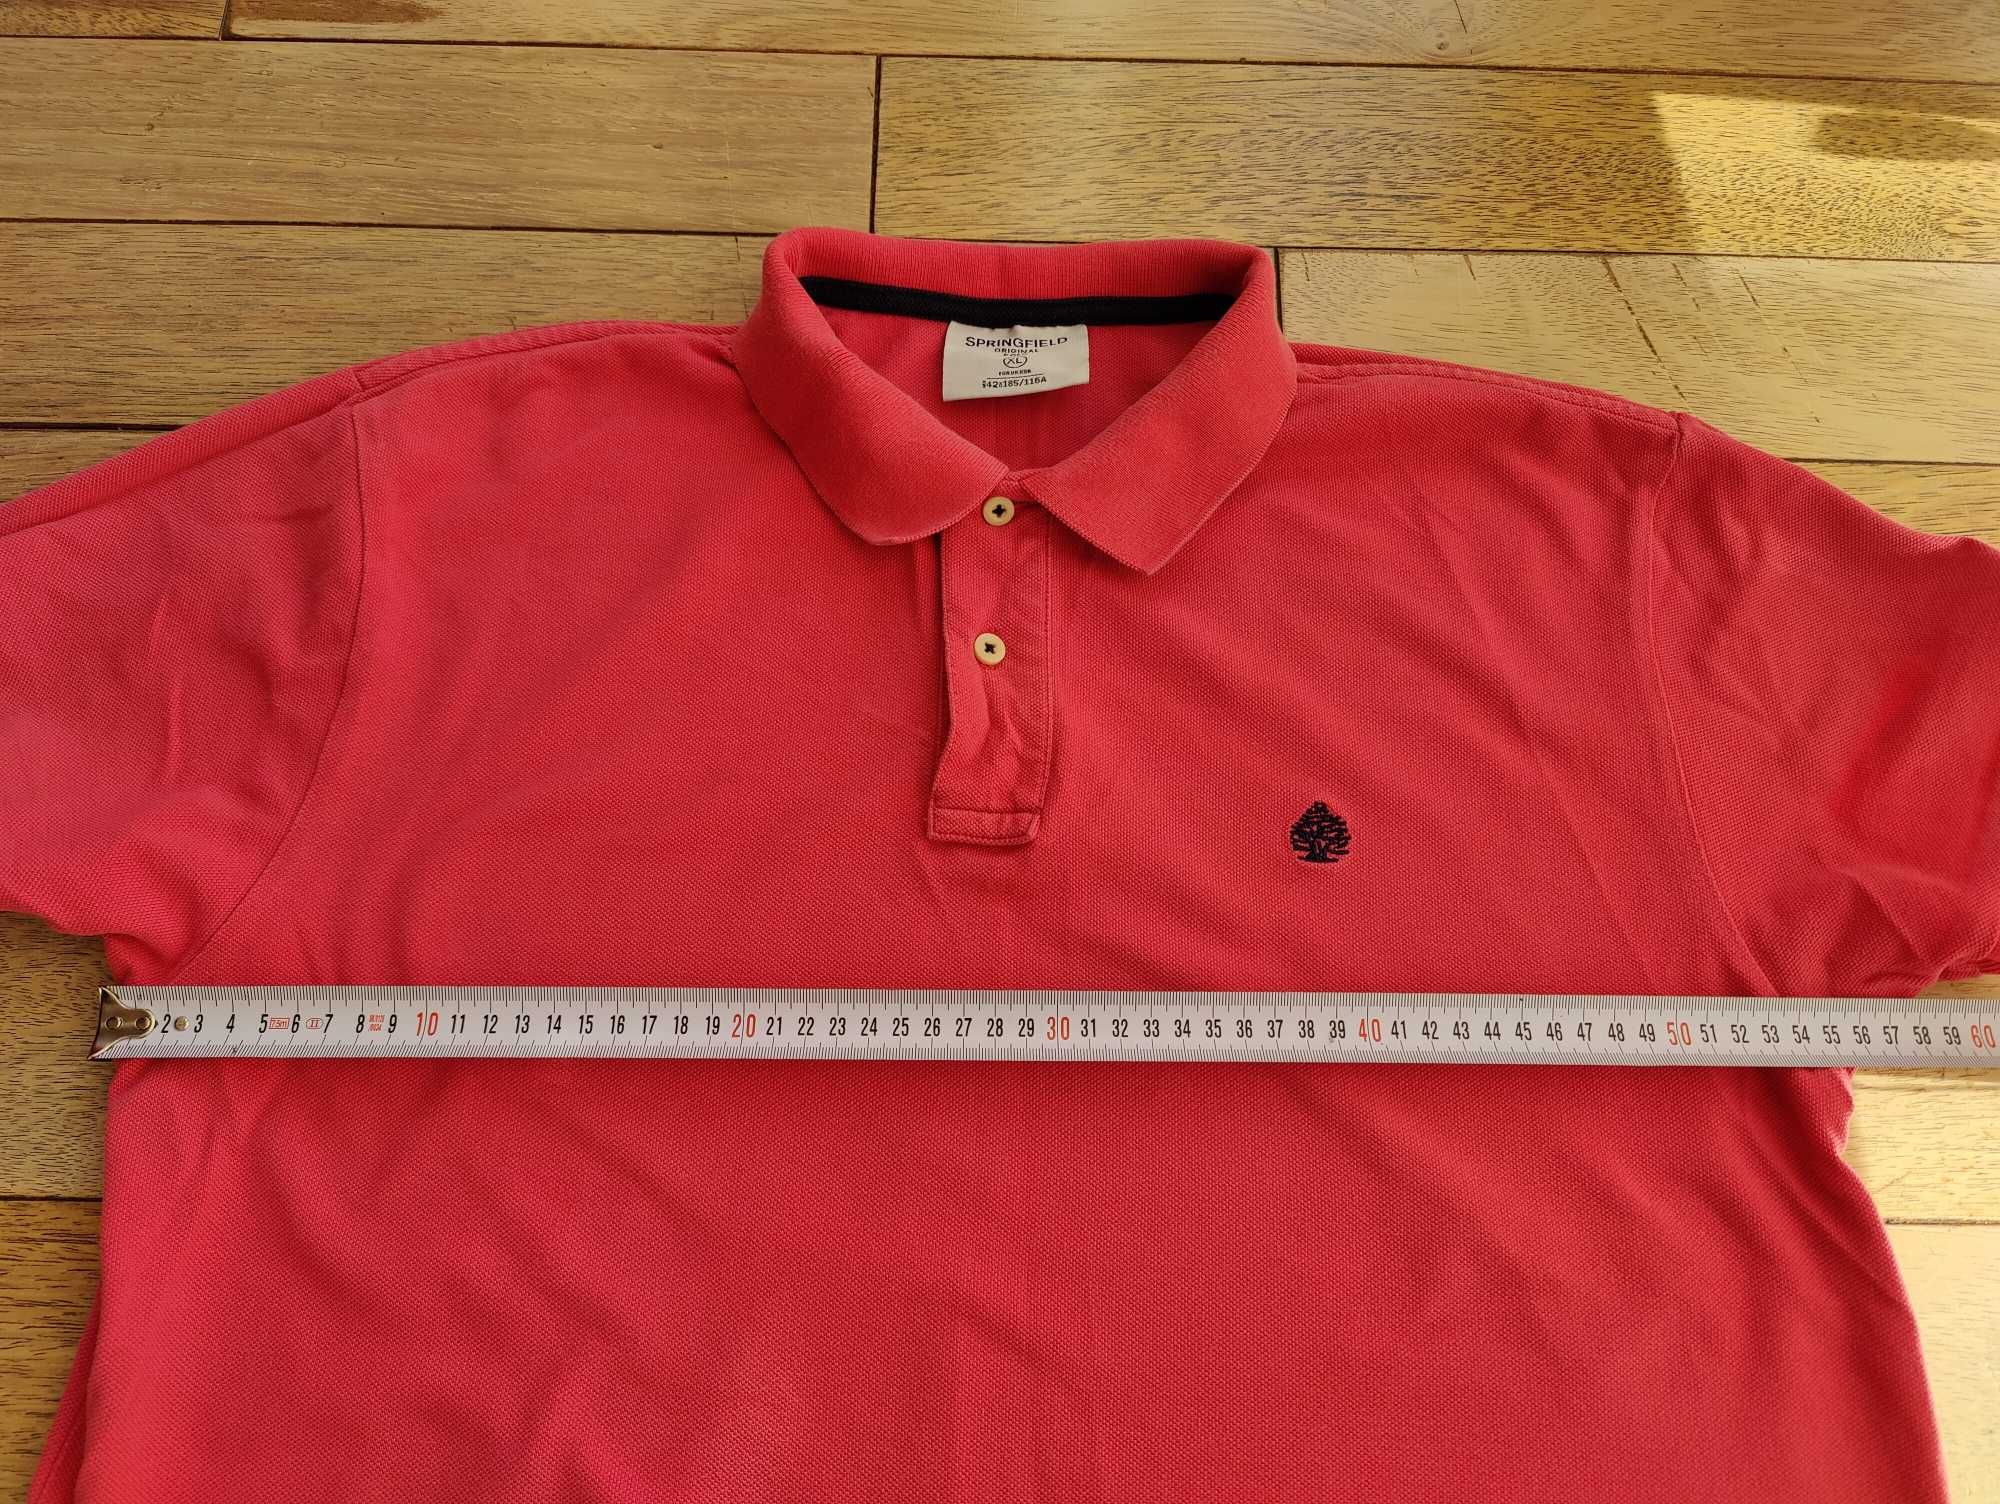 Koszulka polo marki Spriengfield XL stan jak nowa kolor malinowy